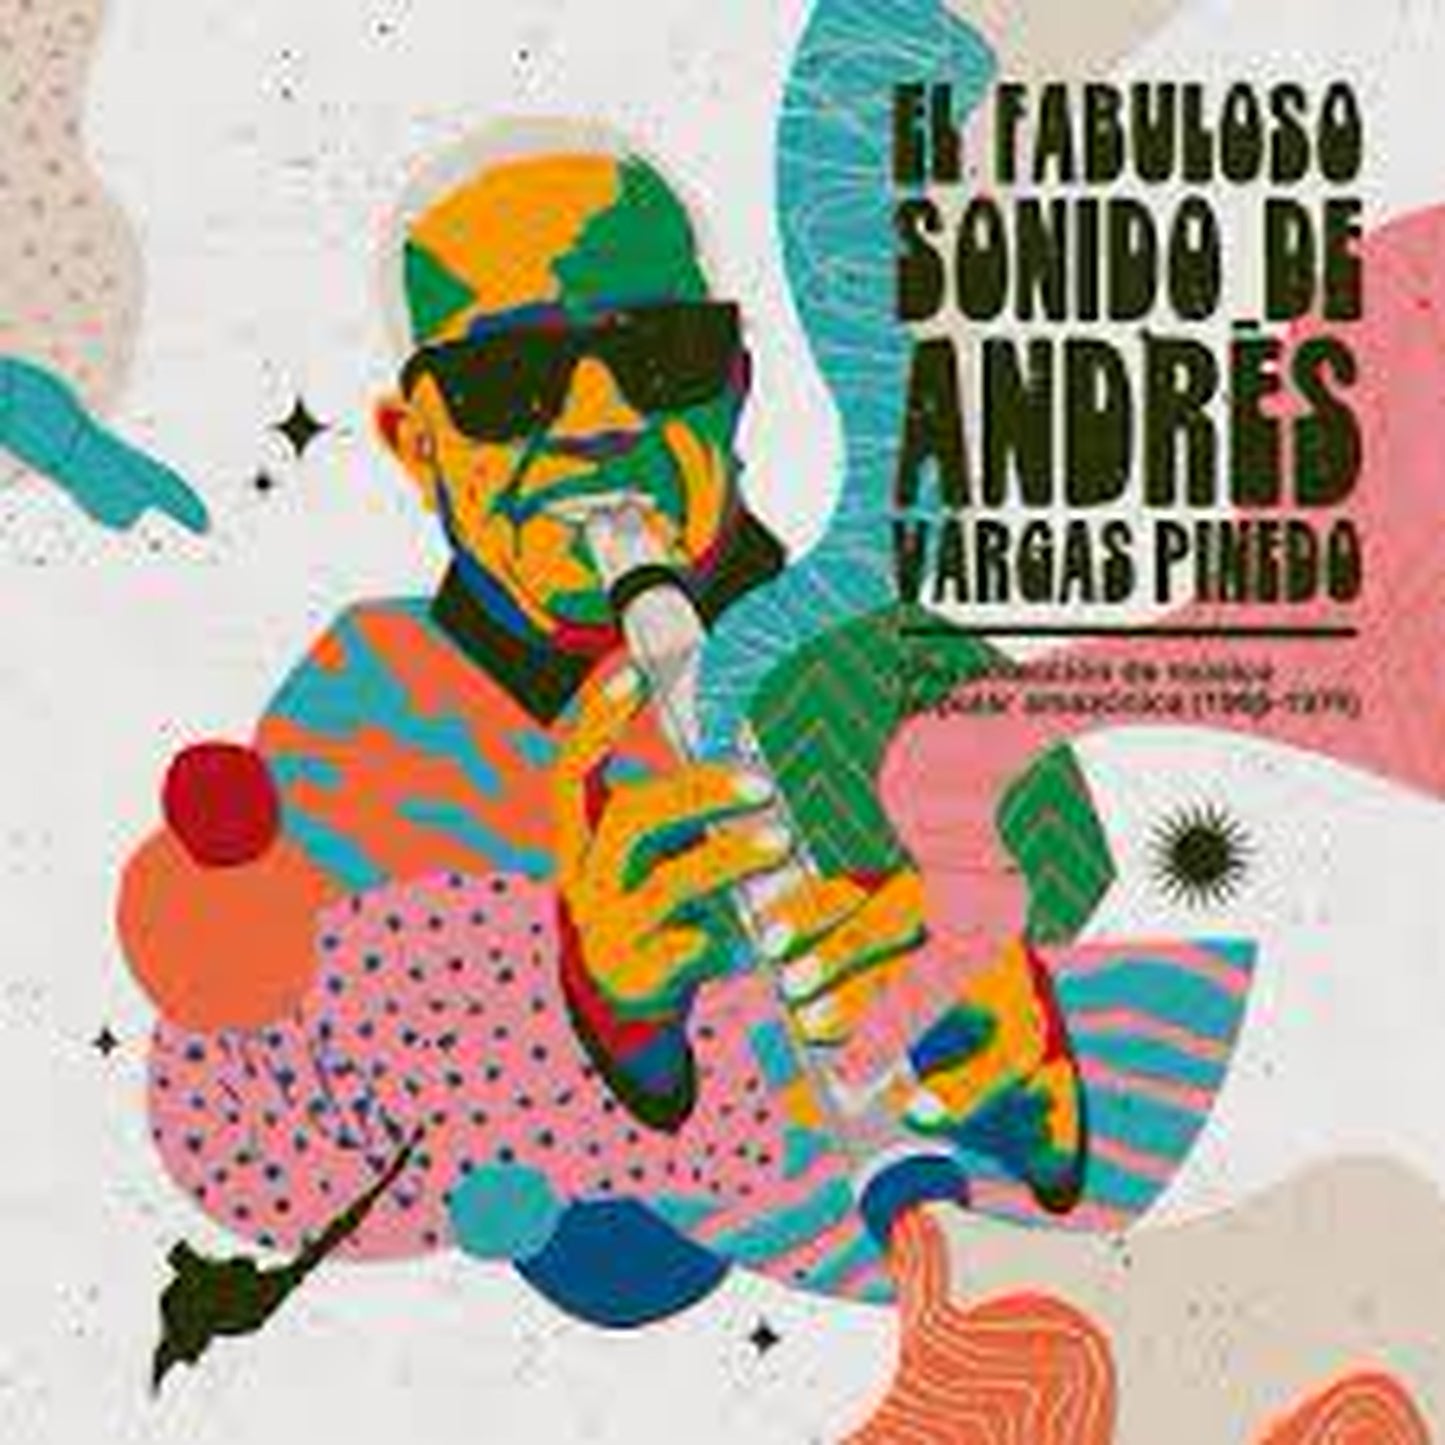 【LP】Andres Vargas Pinedo Favorites - El fabuloso sonido de Andrés Vargas Pinedo: una colección de música popular amazónica (1966-1974)